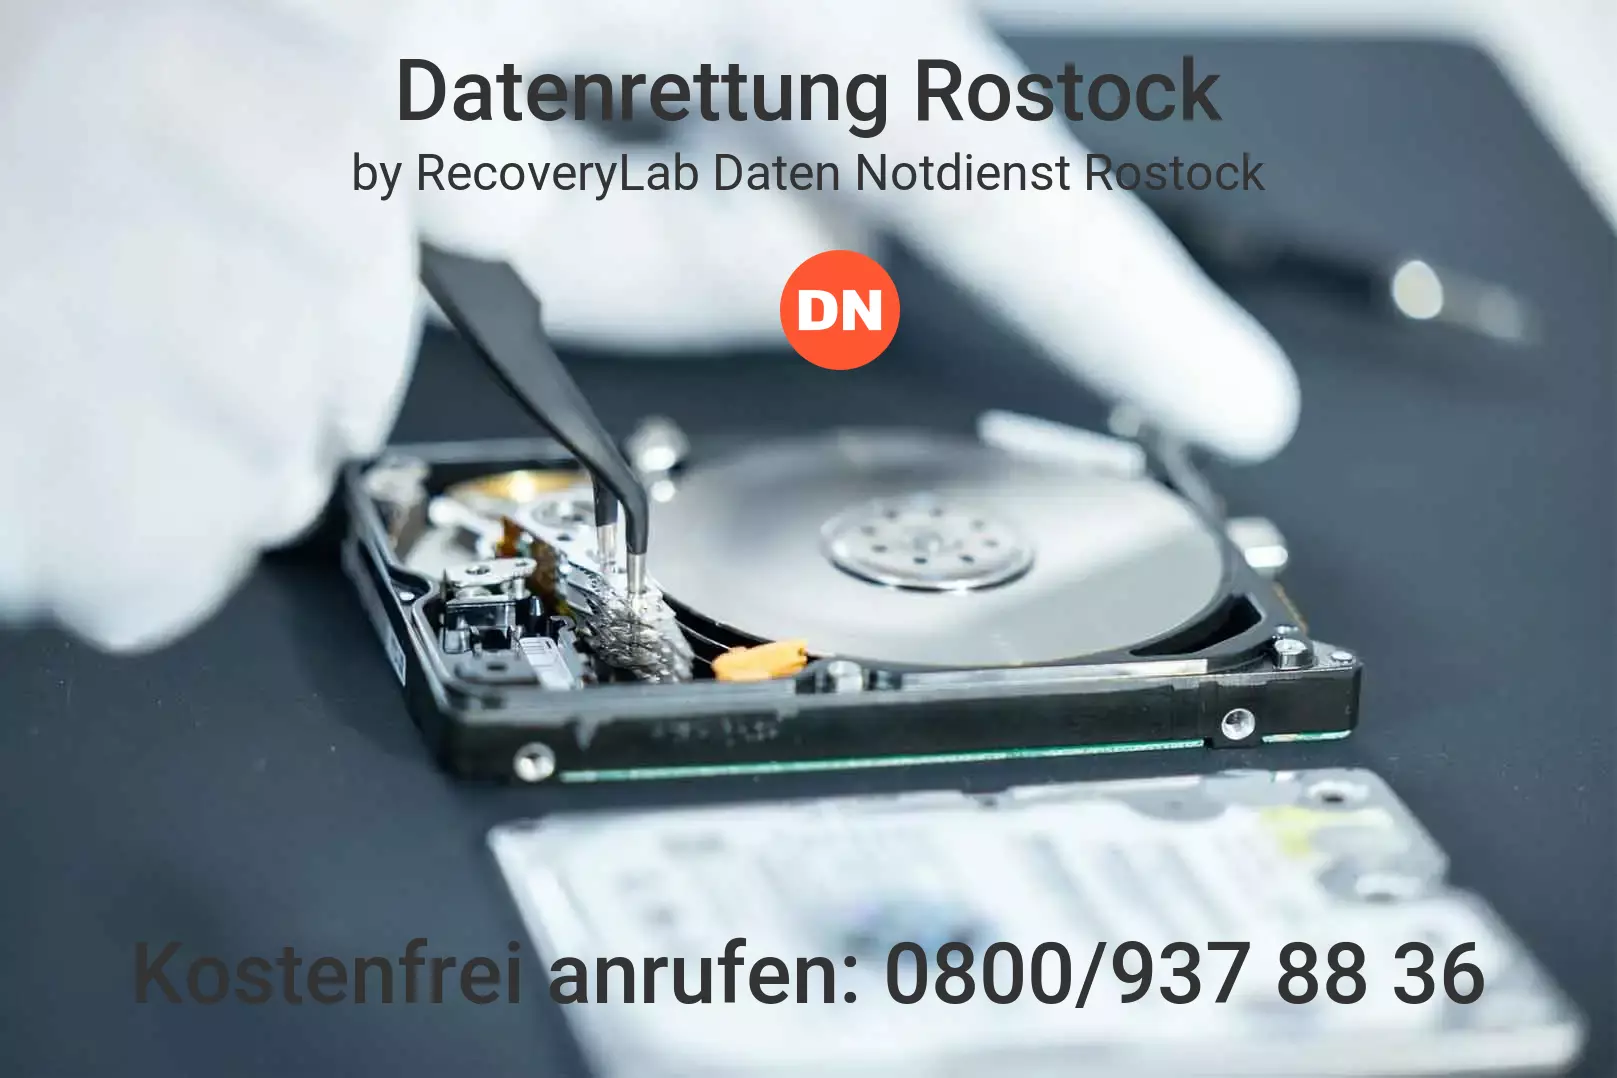 Fallstudie zu erfolgreicher Datenrettung externe Festplatte Rostock